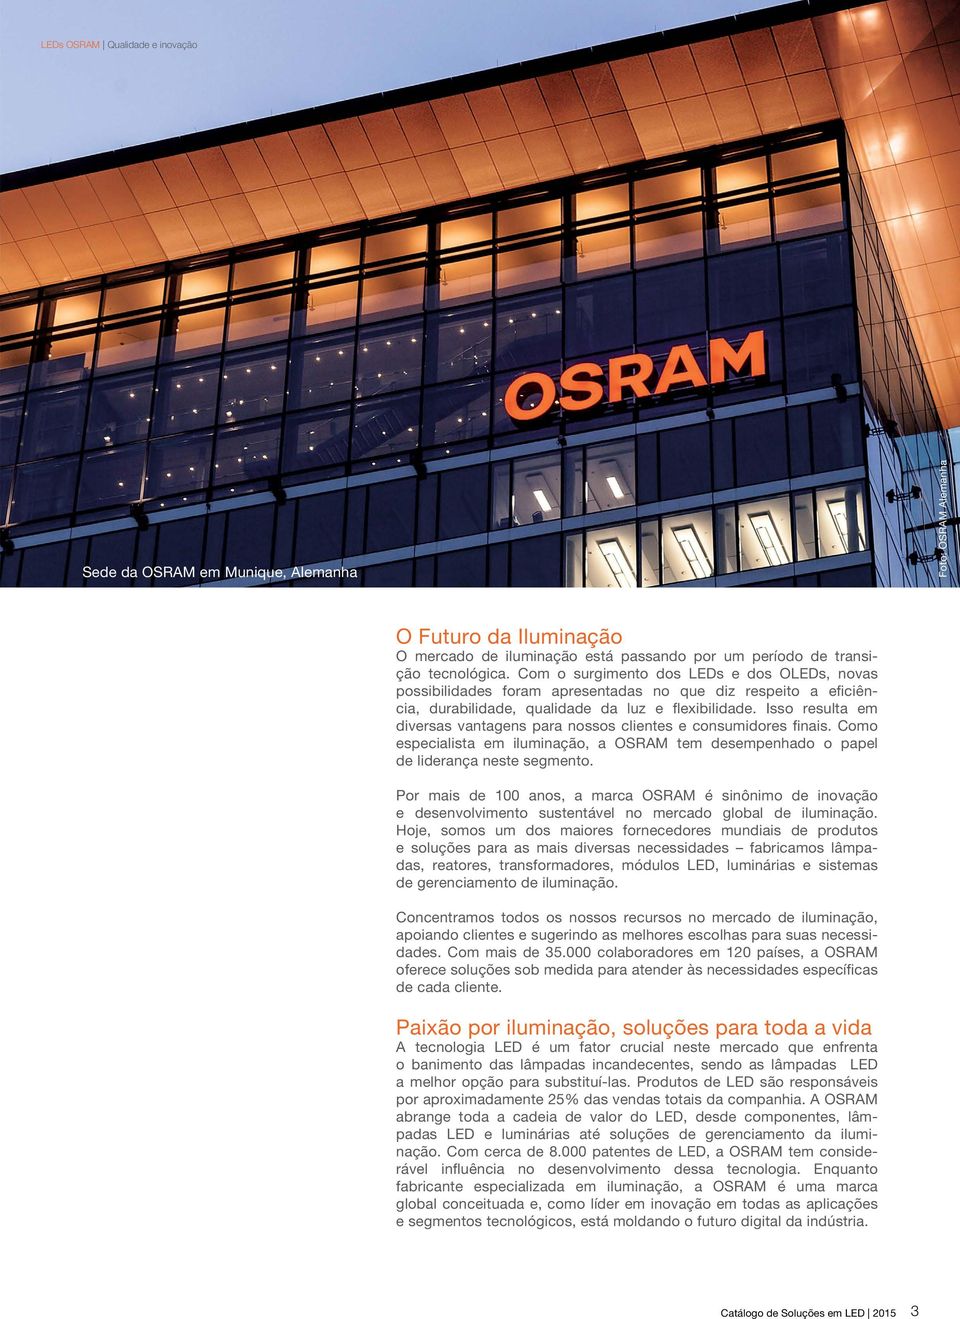 Isso resulta em diversas vantagens para nossos clientes e consumidores finais. Como especialista em iluminação, a OSRAM tem desempenhado o papel de liderança neste segmento.